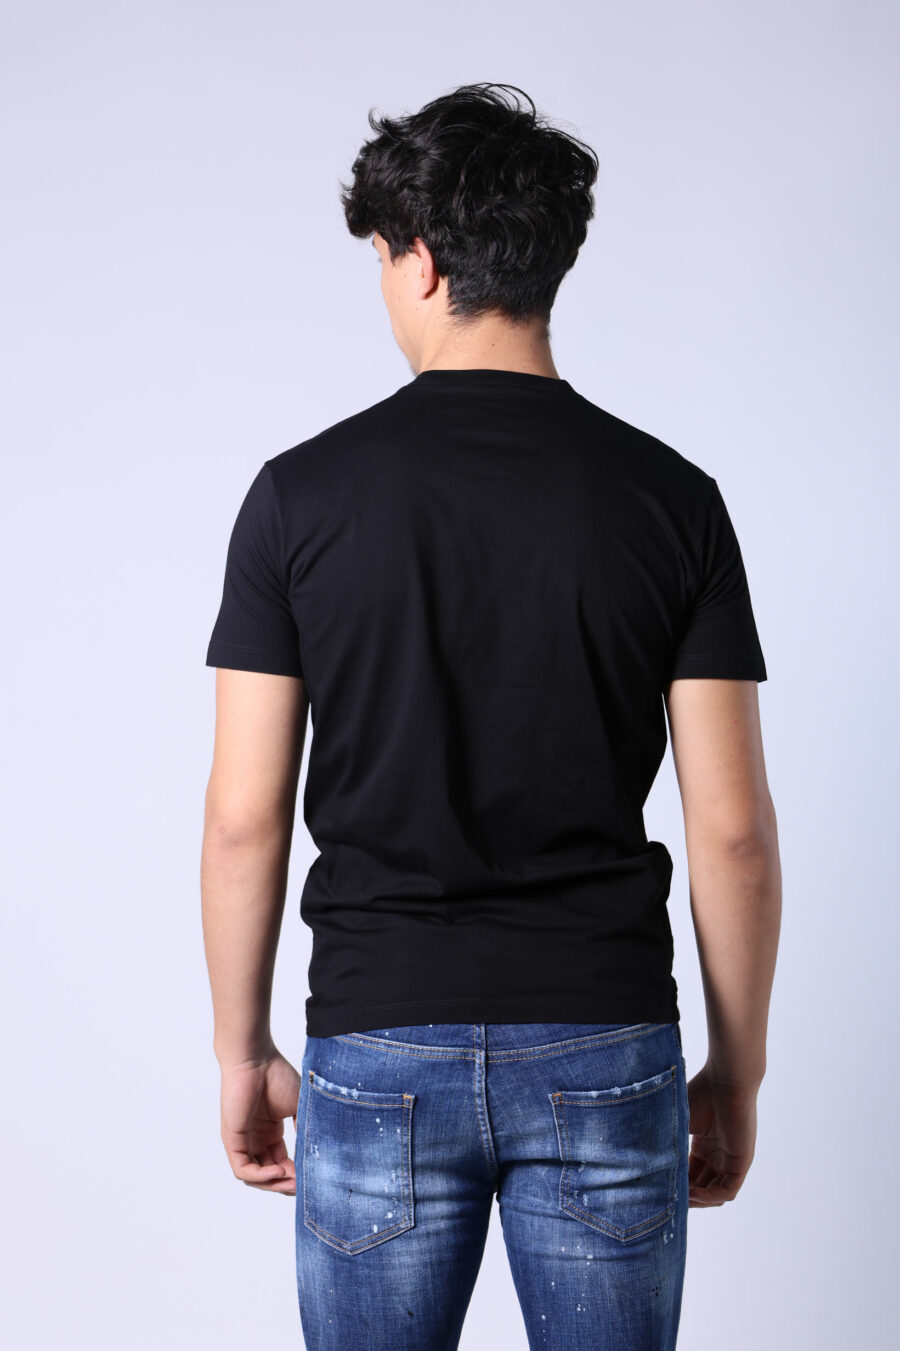 Black T-shirt with turquoise and fuchsia "icon pixeled" maxilogo - Untitled Catalog 05300